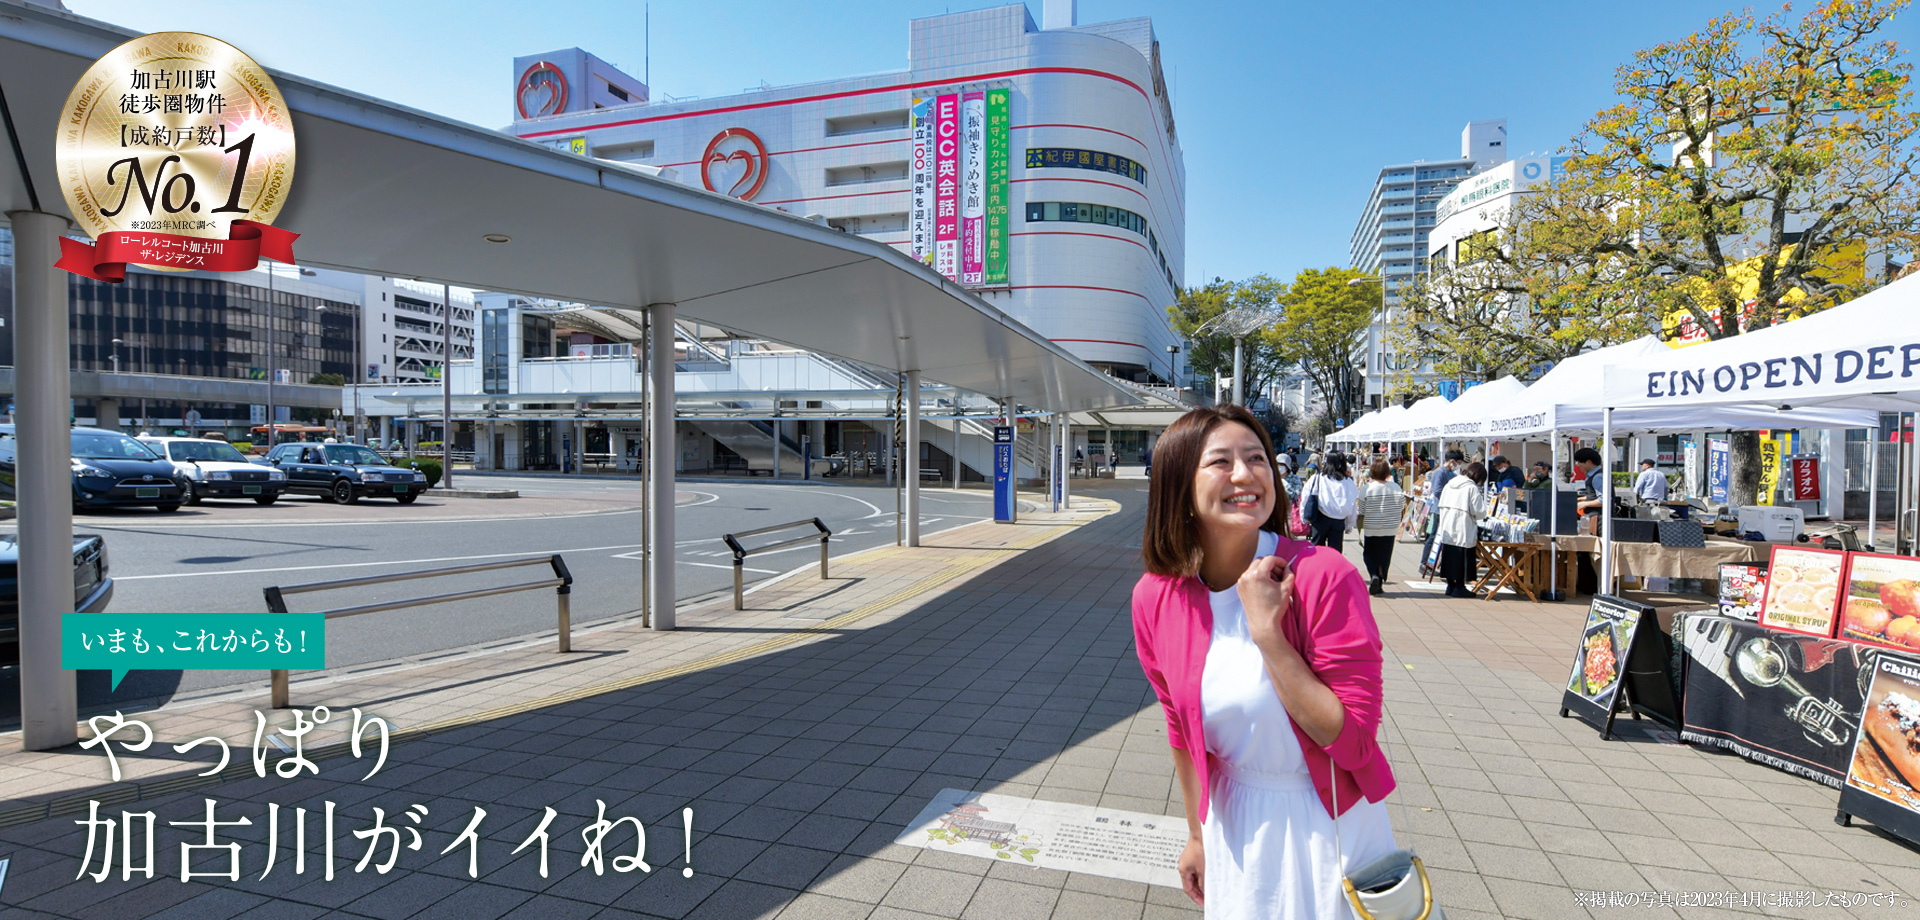 いろいろ揃って毎日が楽しい。加古川駅前街区の幸せな生活